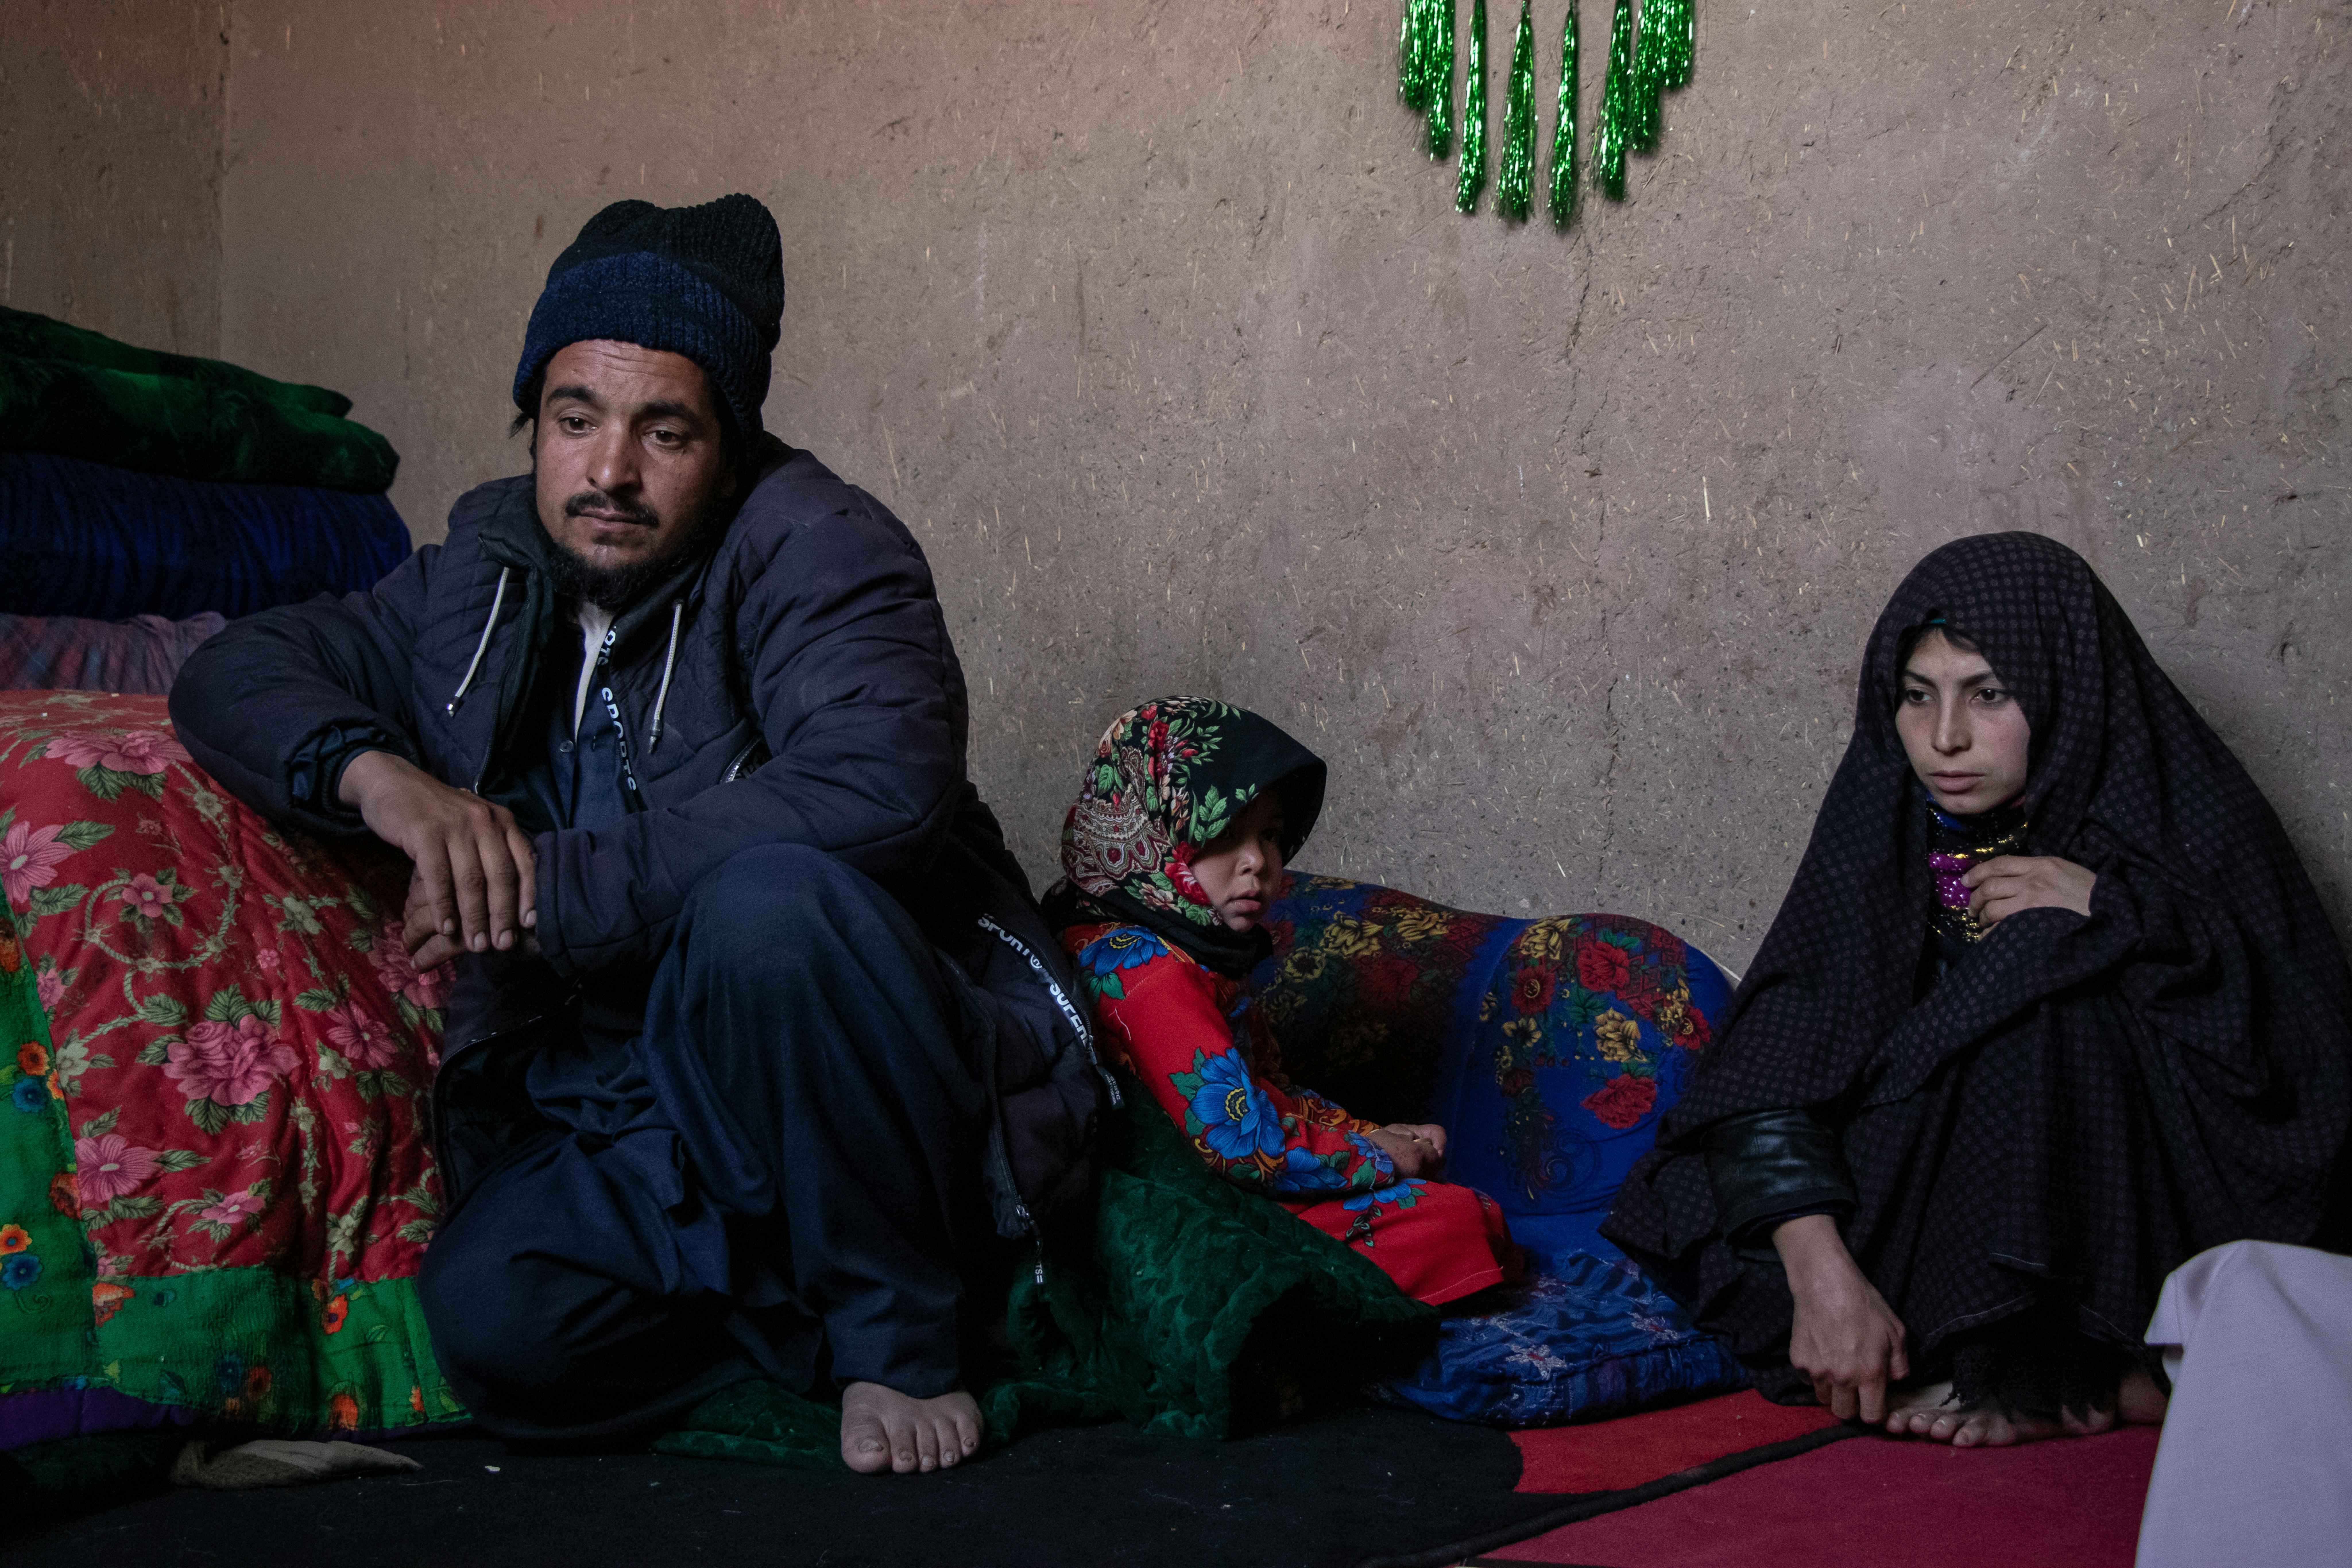 Farhana, 5 anni, è accovacciata tra suo padre Karim e sua madre Nasrin. L'intera famiglia, composta da 5 persone, vive nella casa di una stanza, fatta di pareti di fango, all'interno del campo per sfollati interni ad Herat, Afghanistan. Sono molto poveri, sono dovuti scappare dalla loro casa per i debiti contratti.